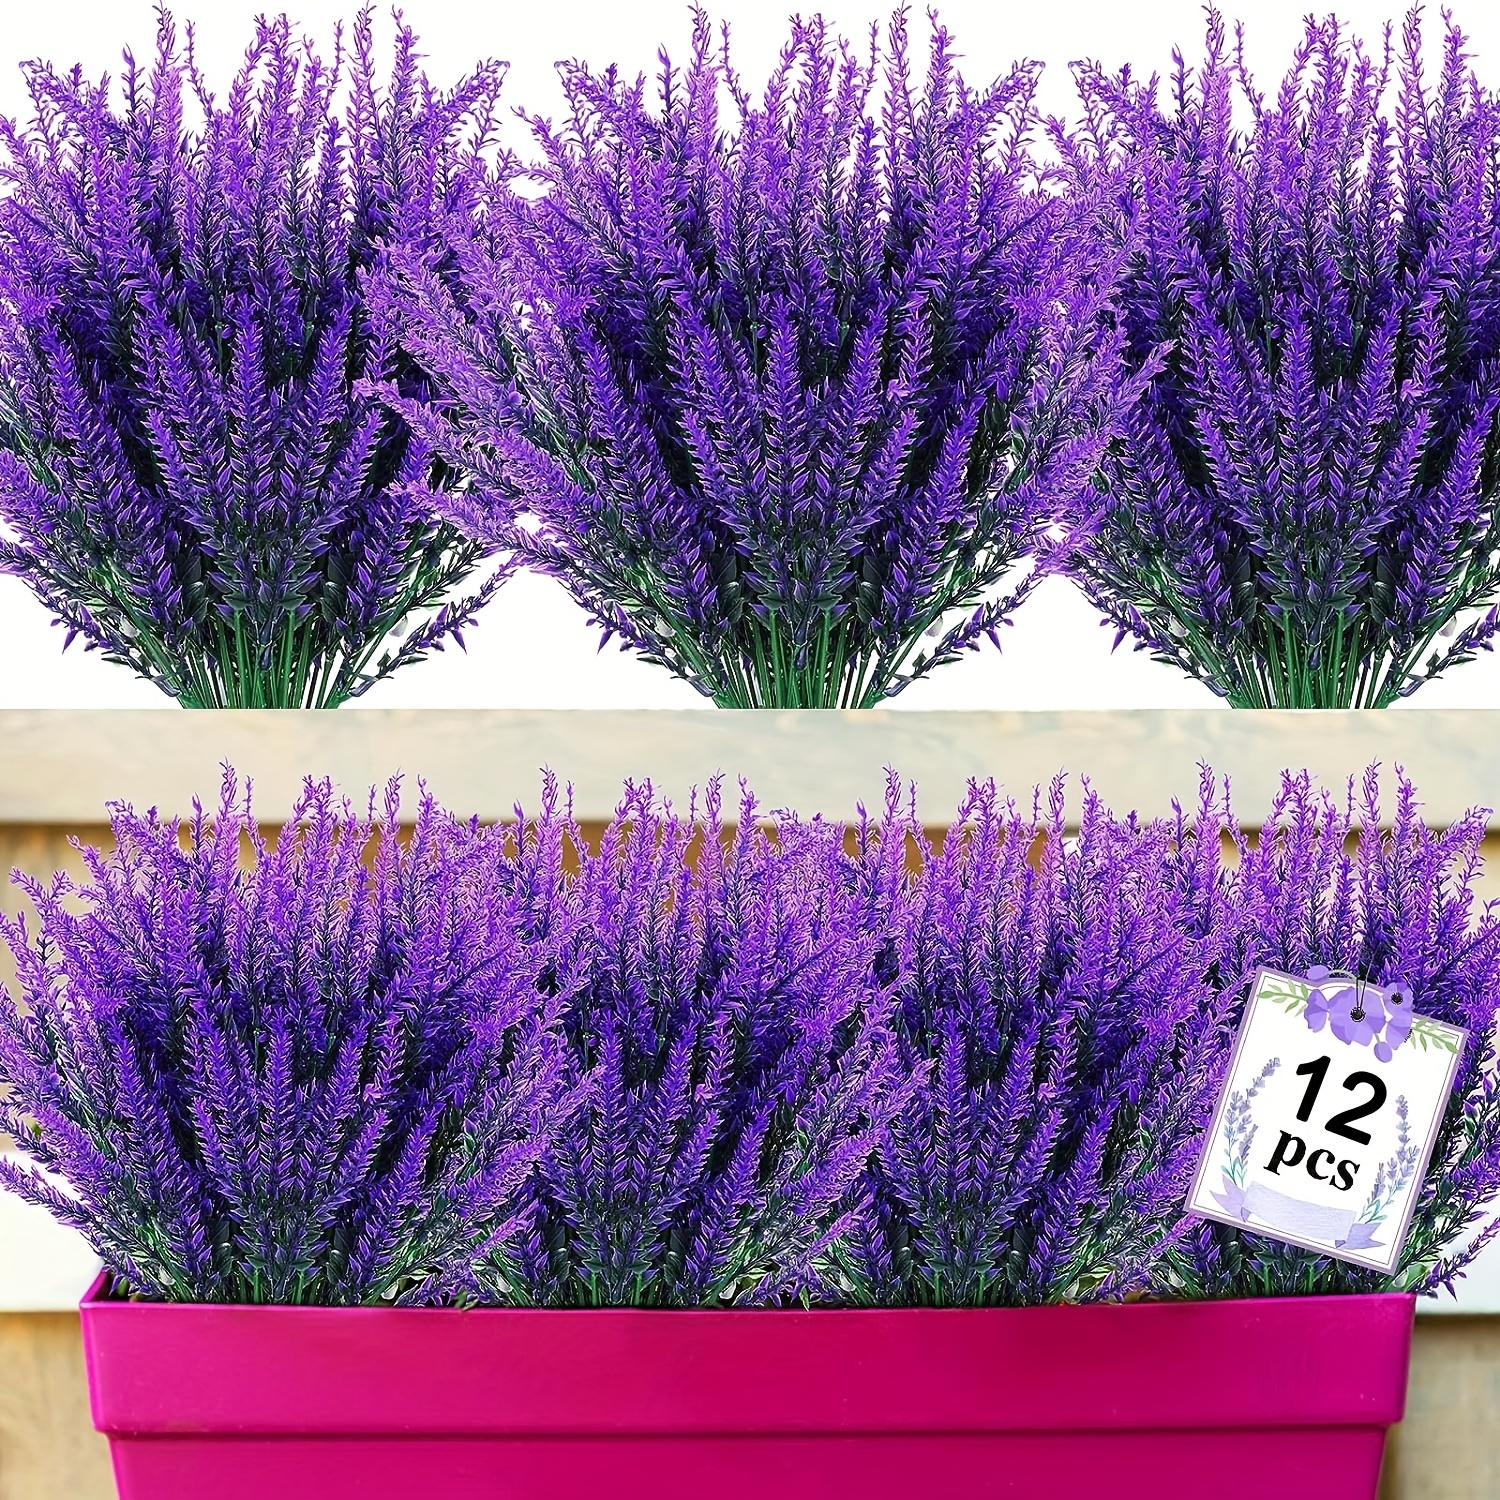 

12 Bundles Artificial Lavender Flowers Outdoor Uv Resistant Fake Flowers Faux Plastic Plants Garden Porch Window Box Decorating